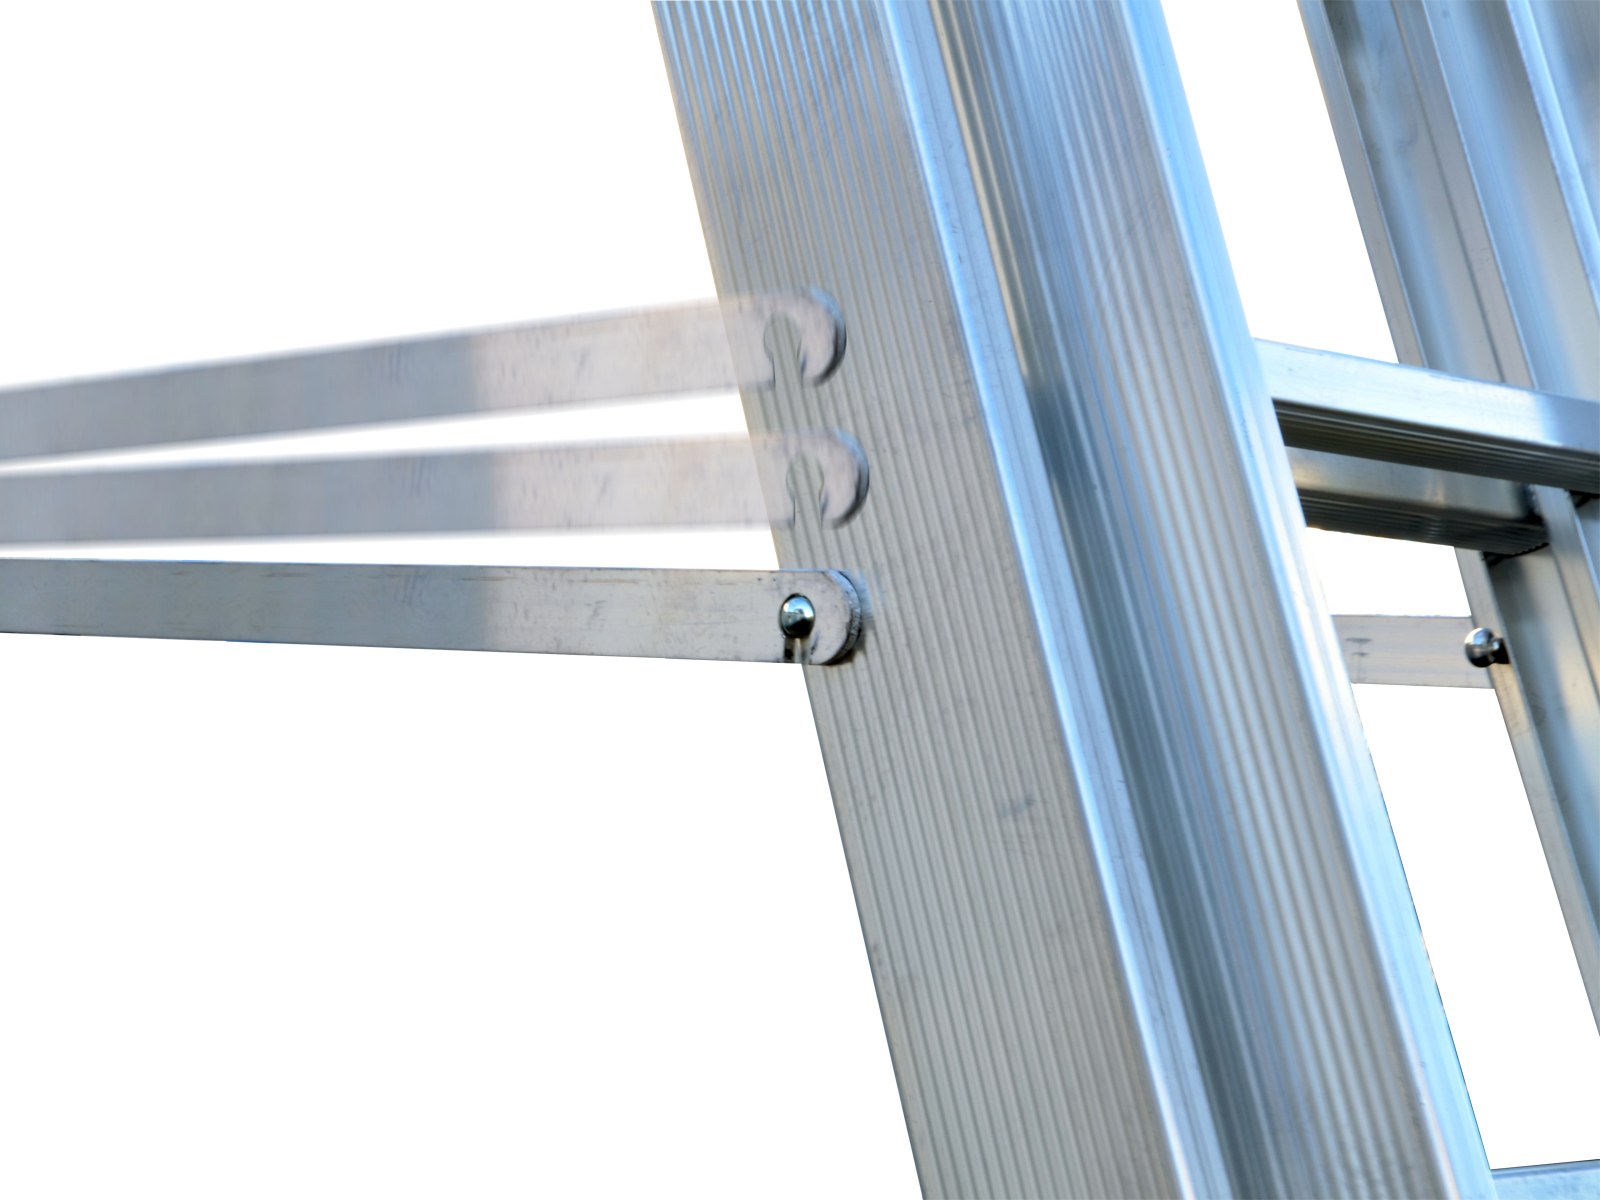 Mehrzweckleiter "Industrieausführung" 3-teilig, 41/47/53 cm breit mit Aussteifungsstreben an den Leiternteilen, 3x10 Sprossen/Stufen